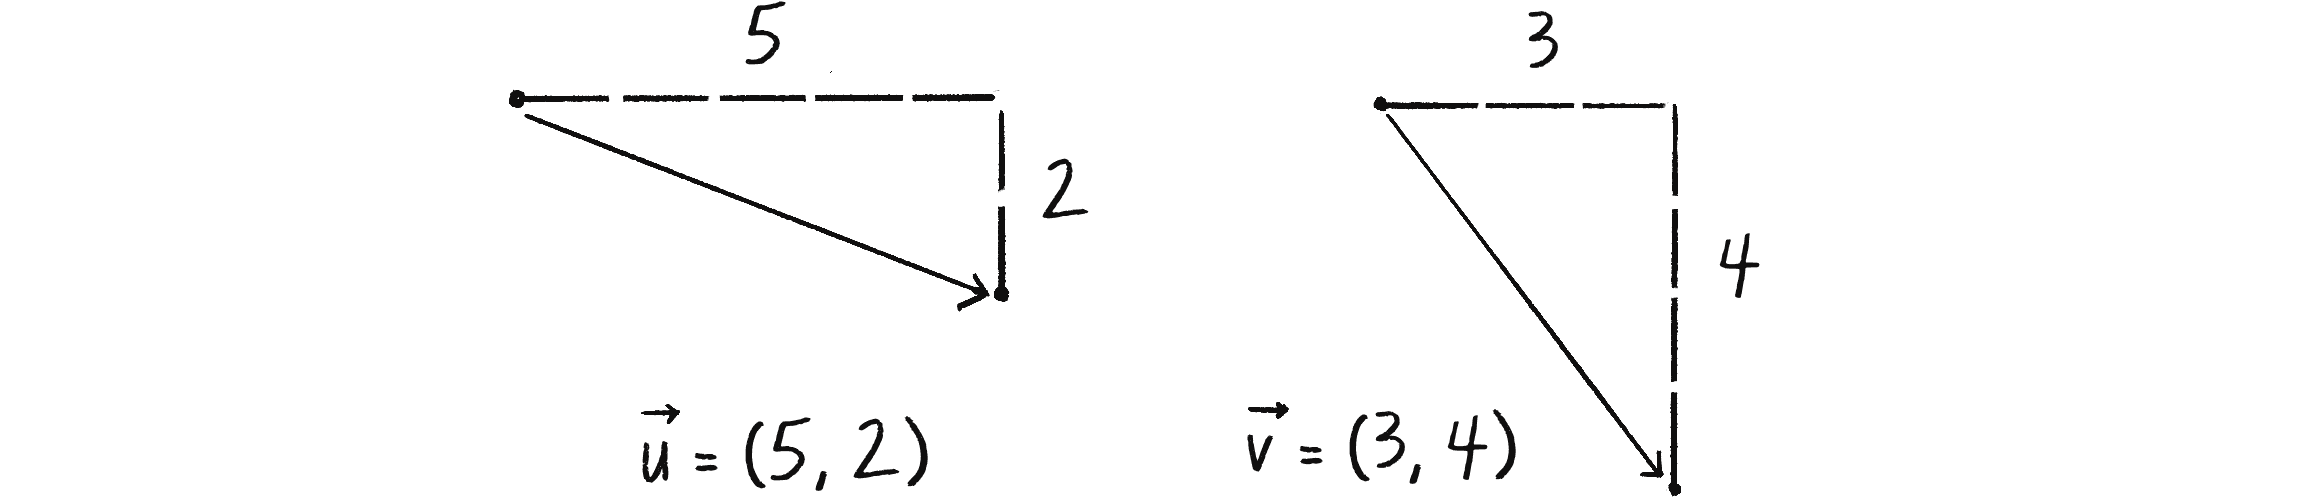 Figure 1.5: Two vectors  
\vec{u} and \vec{v} depicted as triangles